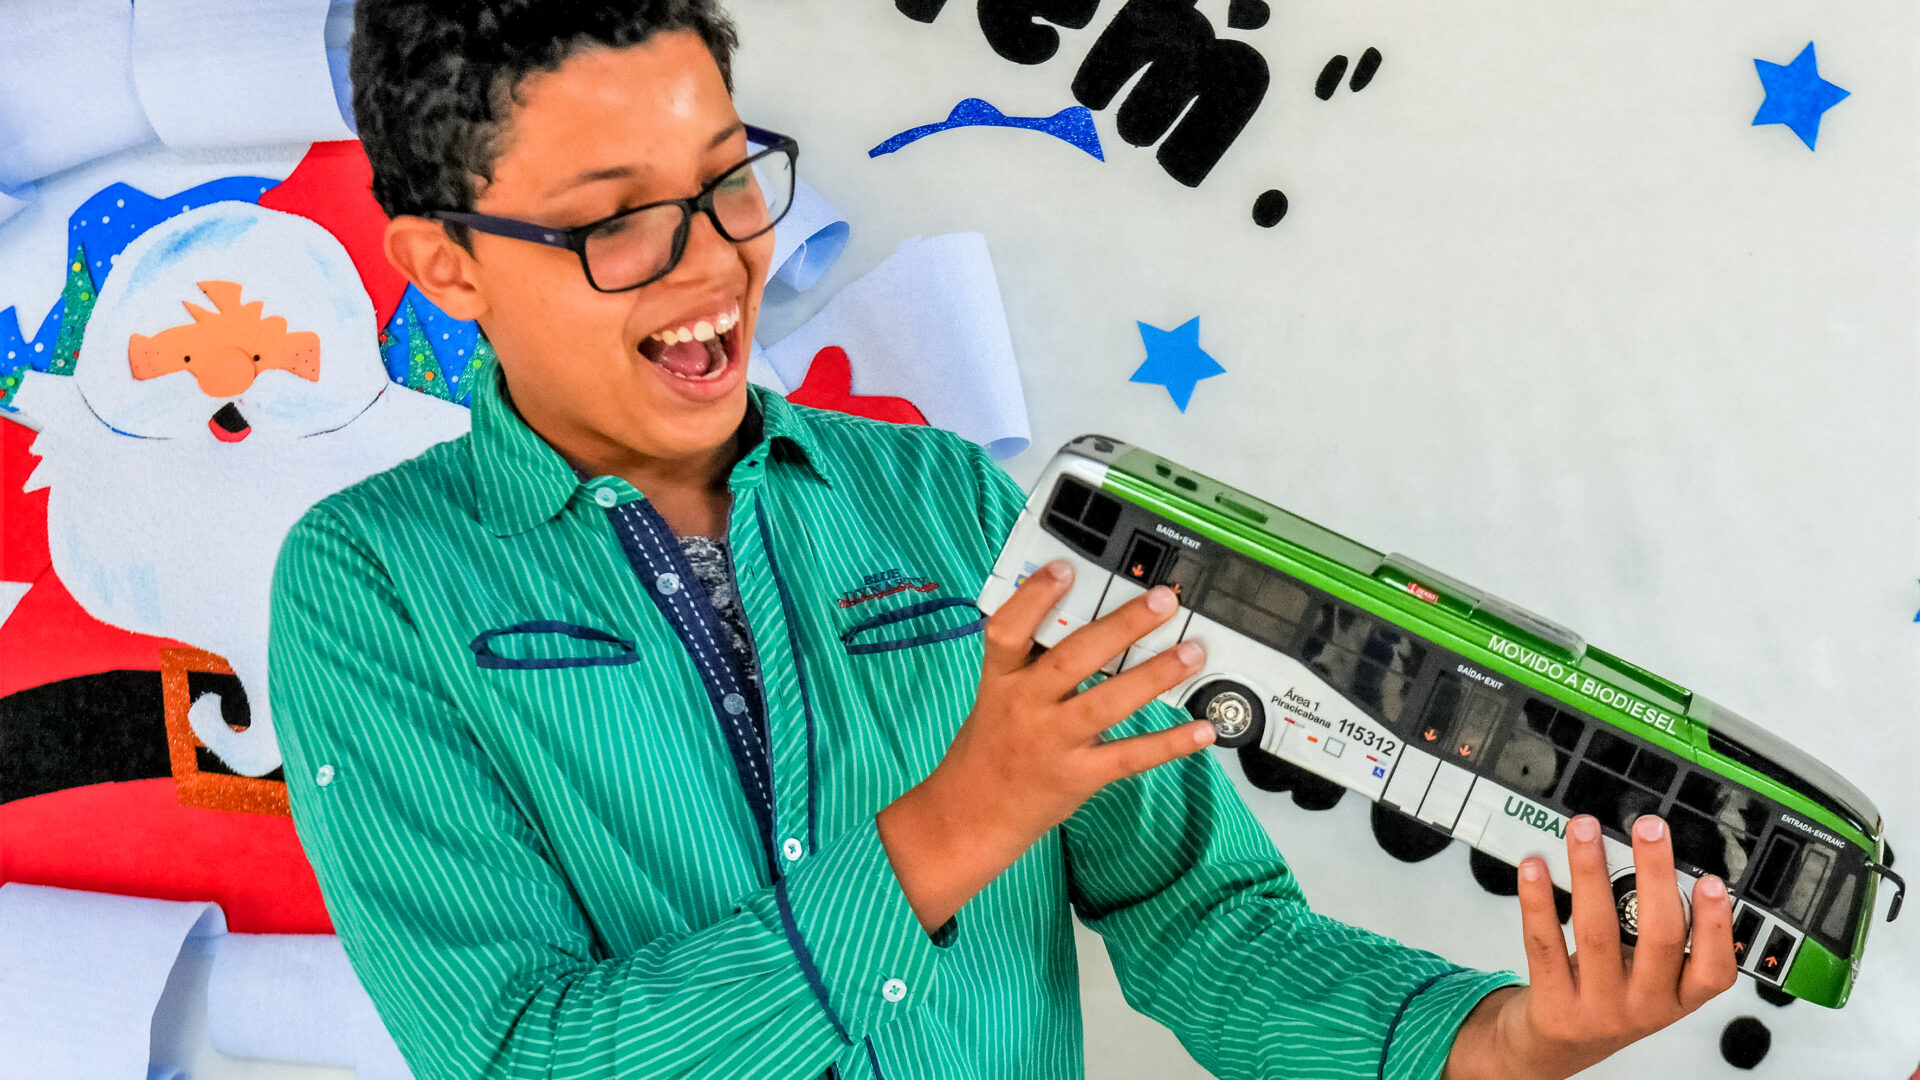 A Secretaria de Transporte e Mobilidade preparou uma surpresa para o estudante Pedro Henrique: a doação de uma réplica em miniatura de um ônibus utilizado nas ruas do Distrito Federal | Foto: Paulo H. Carvalho